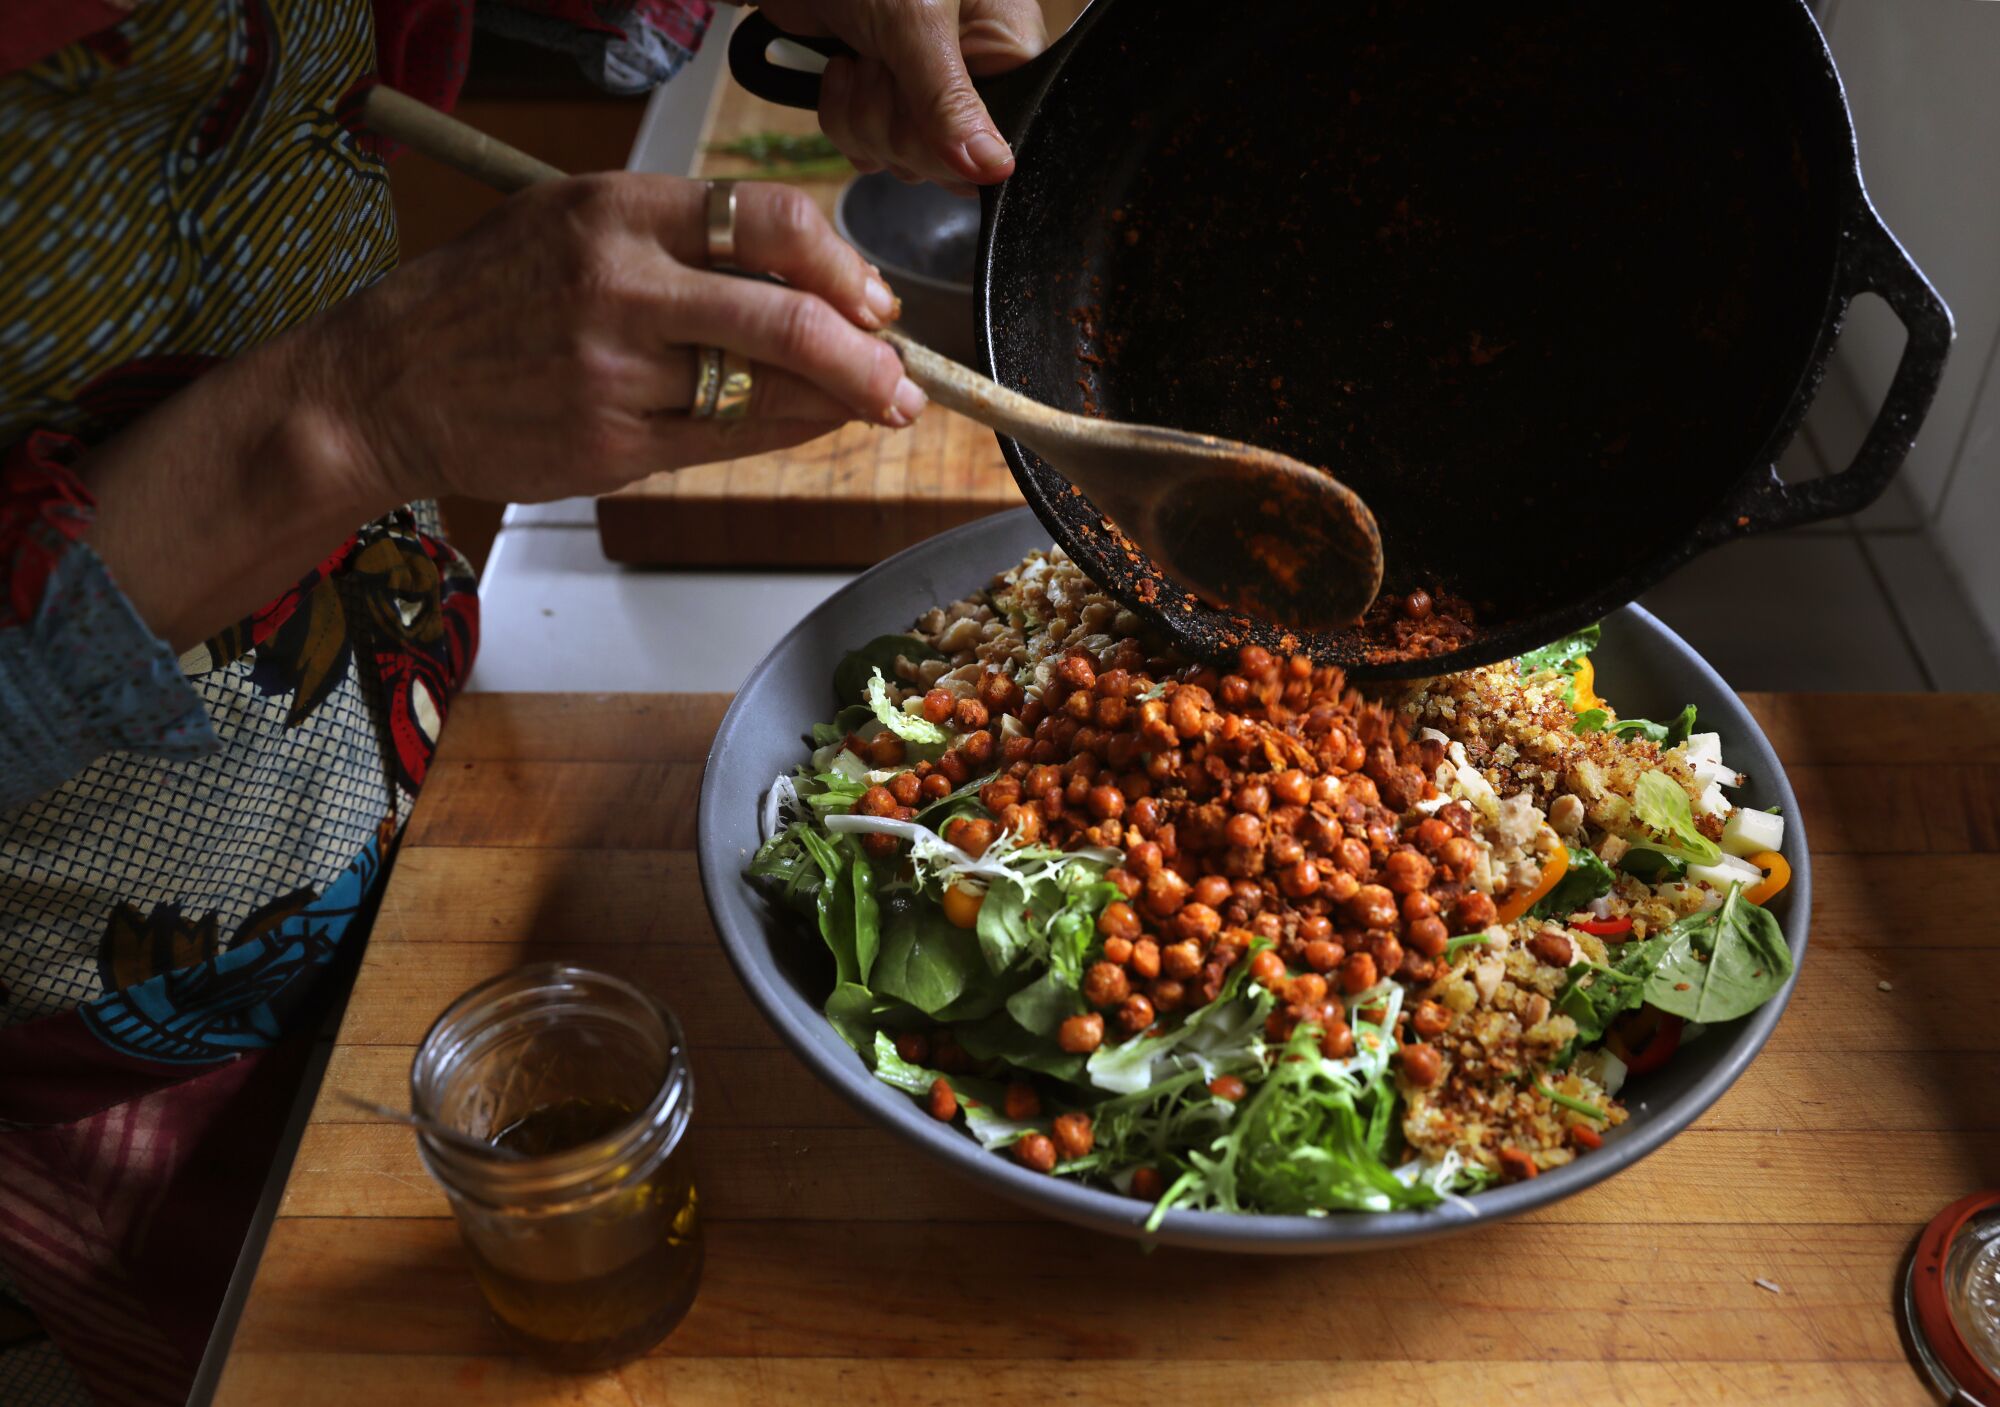 Hände bereiten eine große Schüssel mit gehacktem Salat zu.